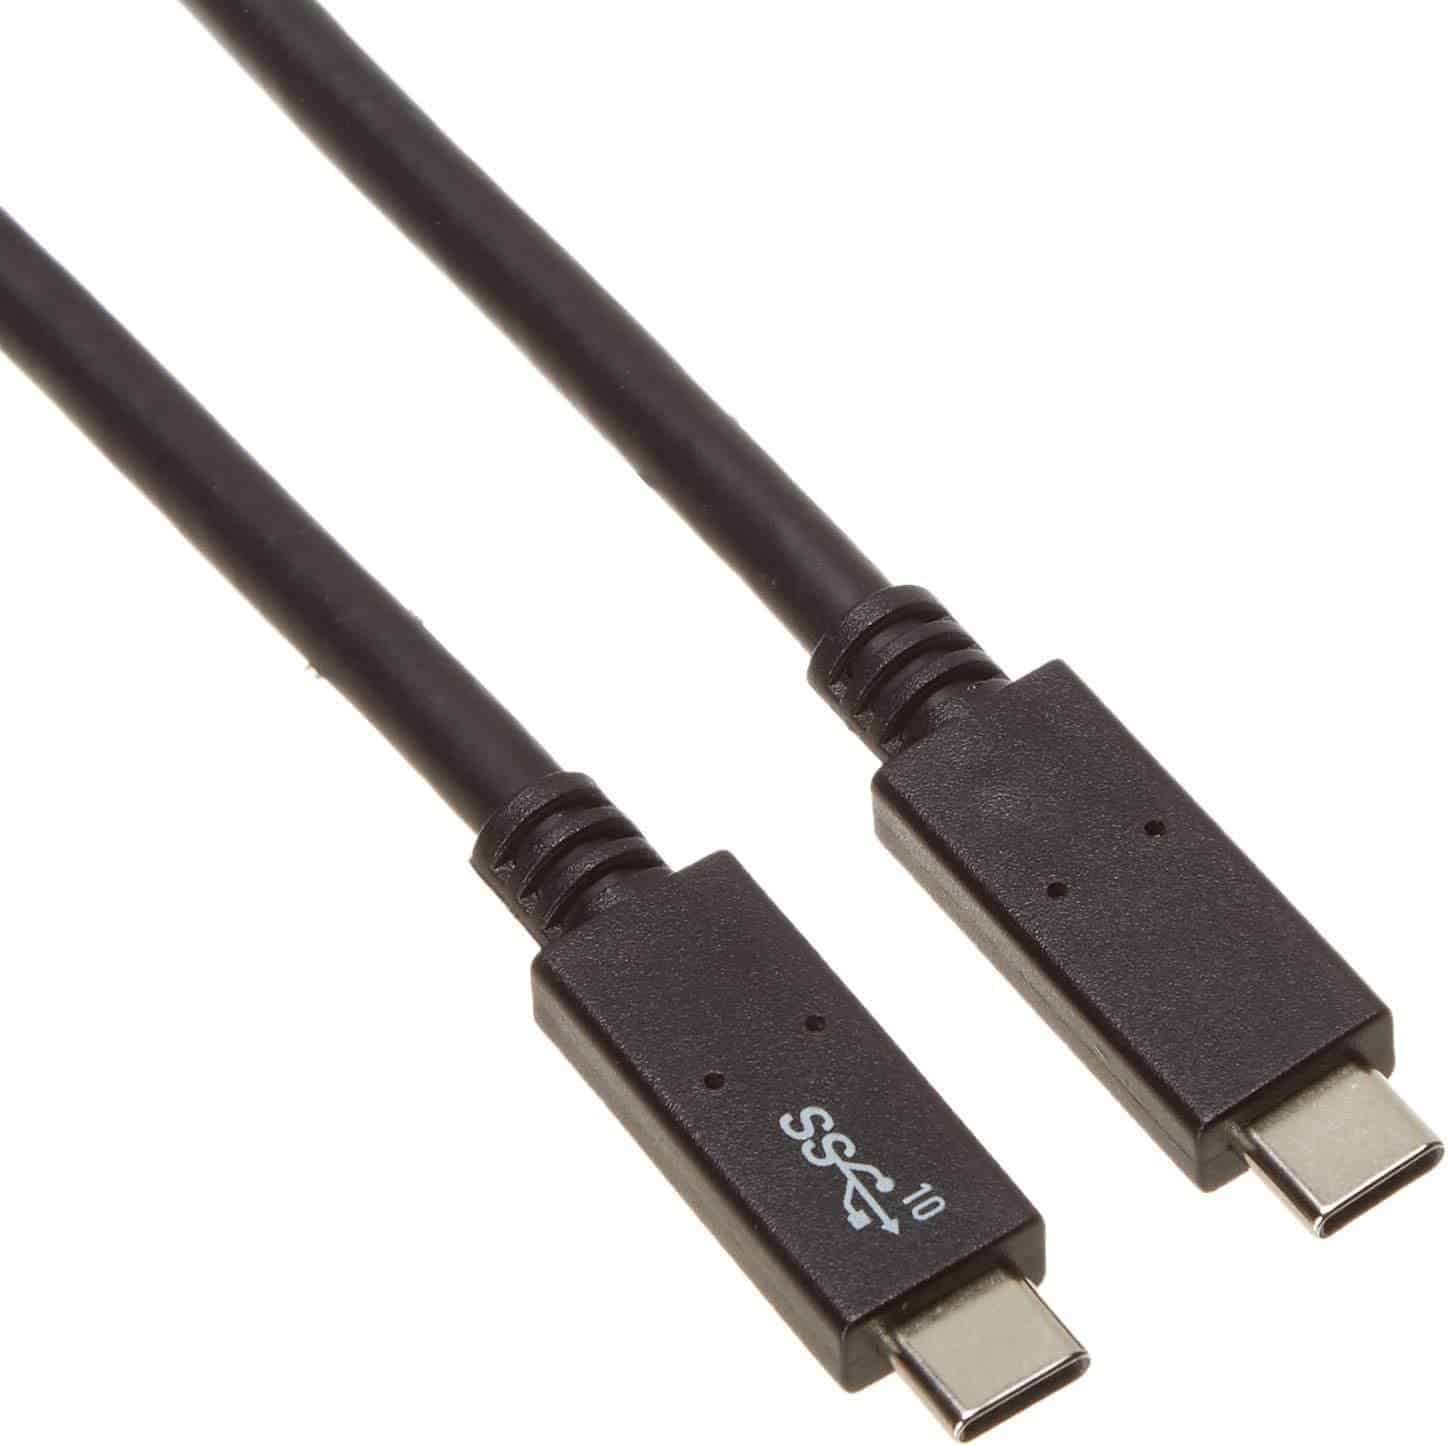 Monoprice USB C to USB C 3.1 Gen 2